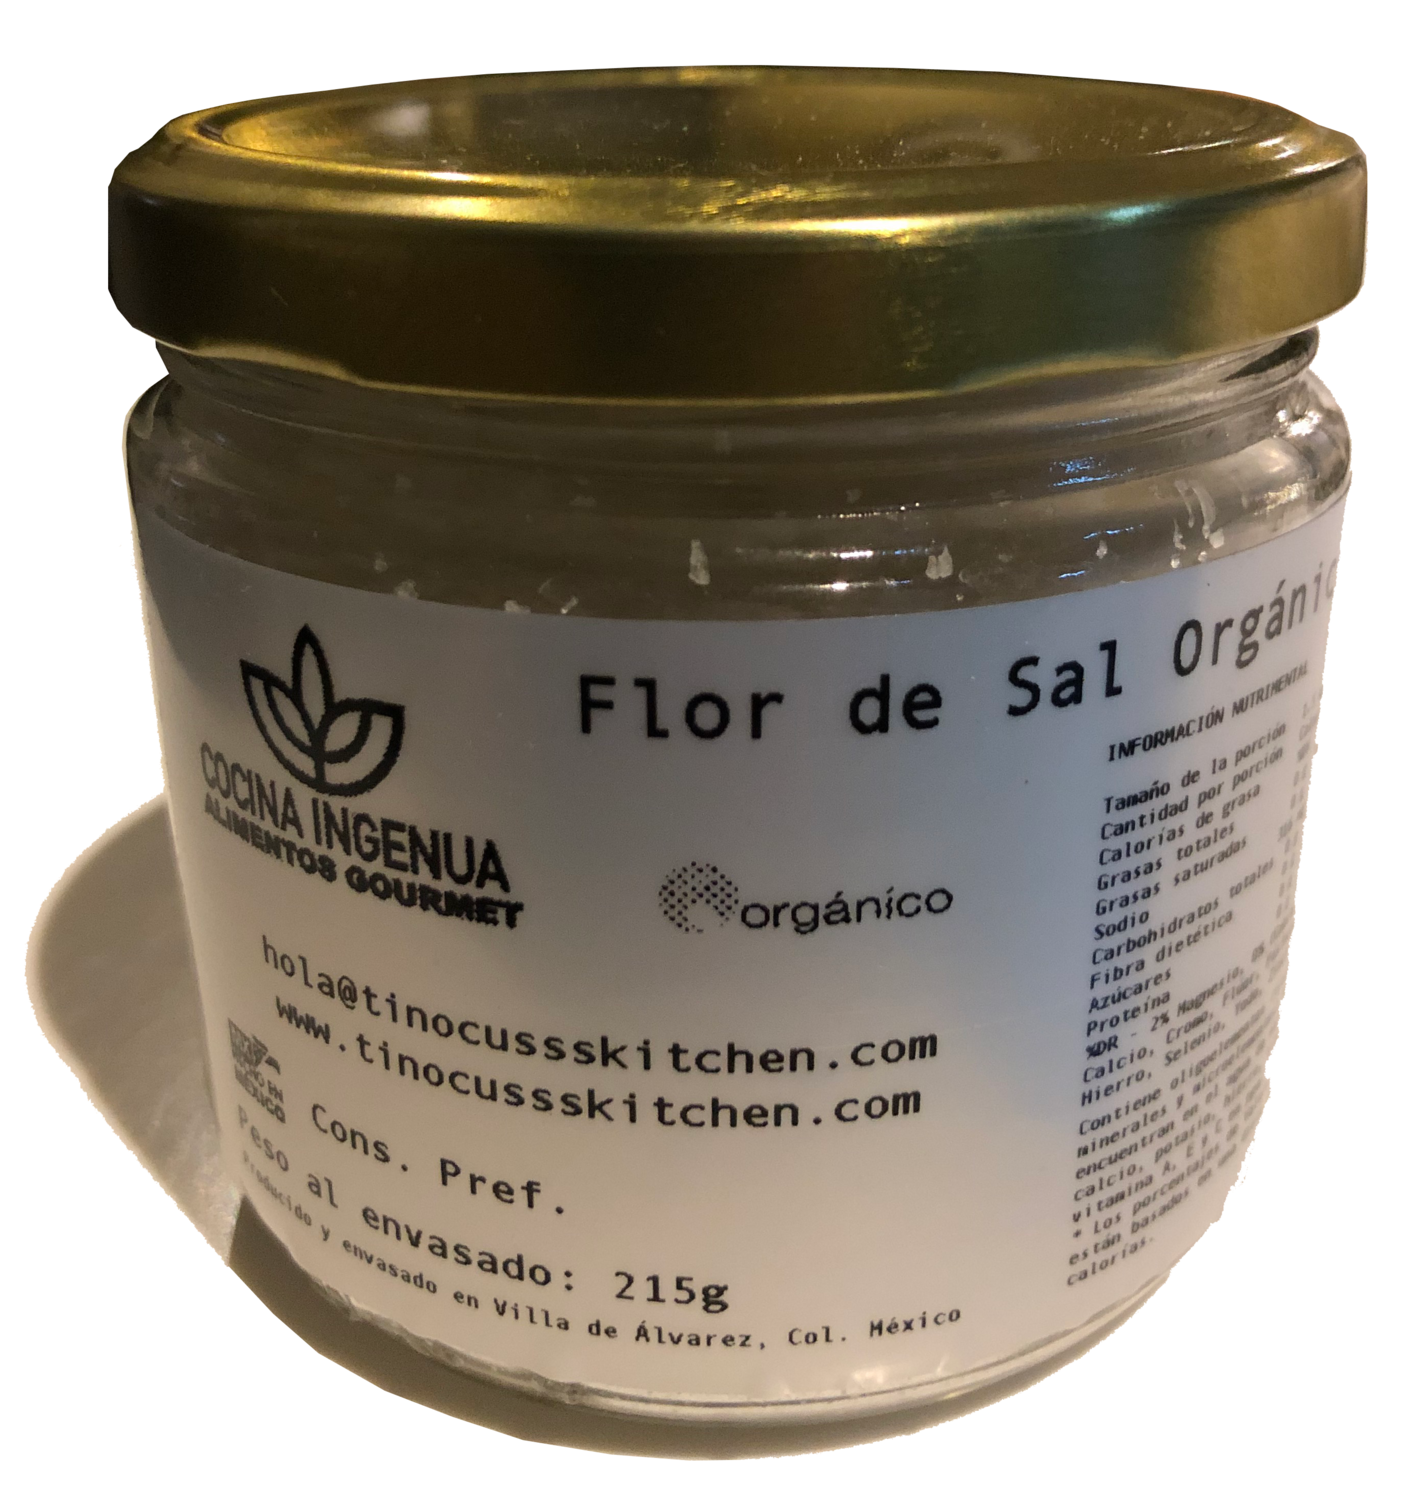 Flor de Sal 100% natural, artesanal, tradicional y orgánico 295g